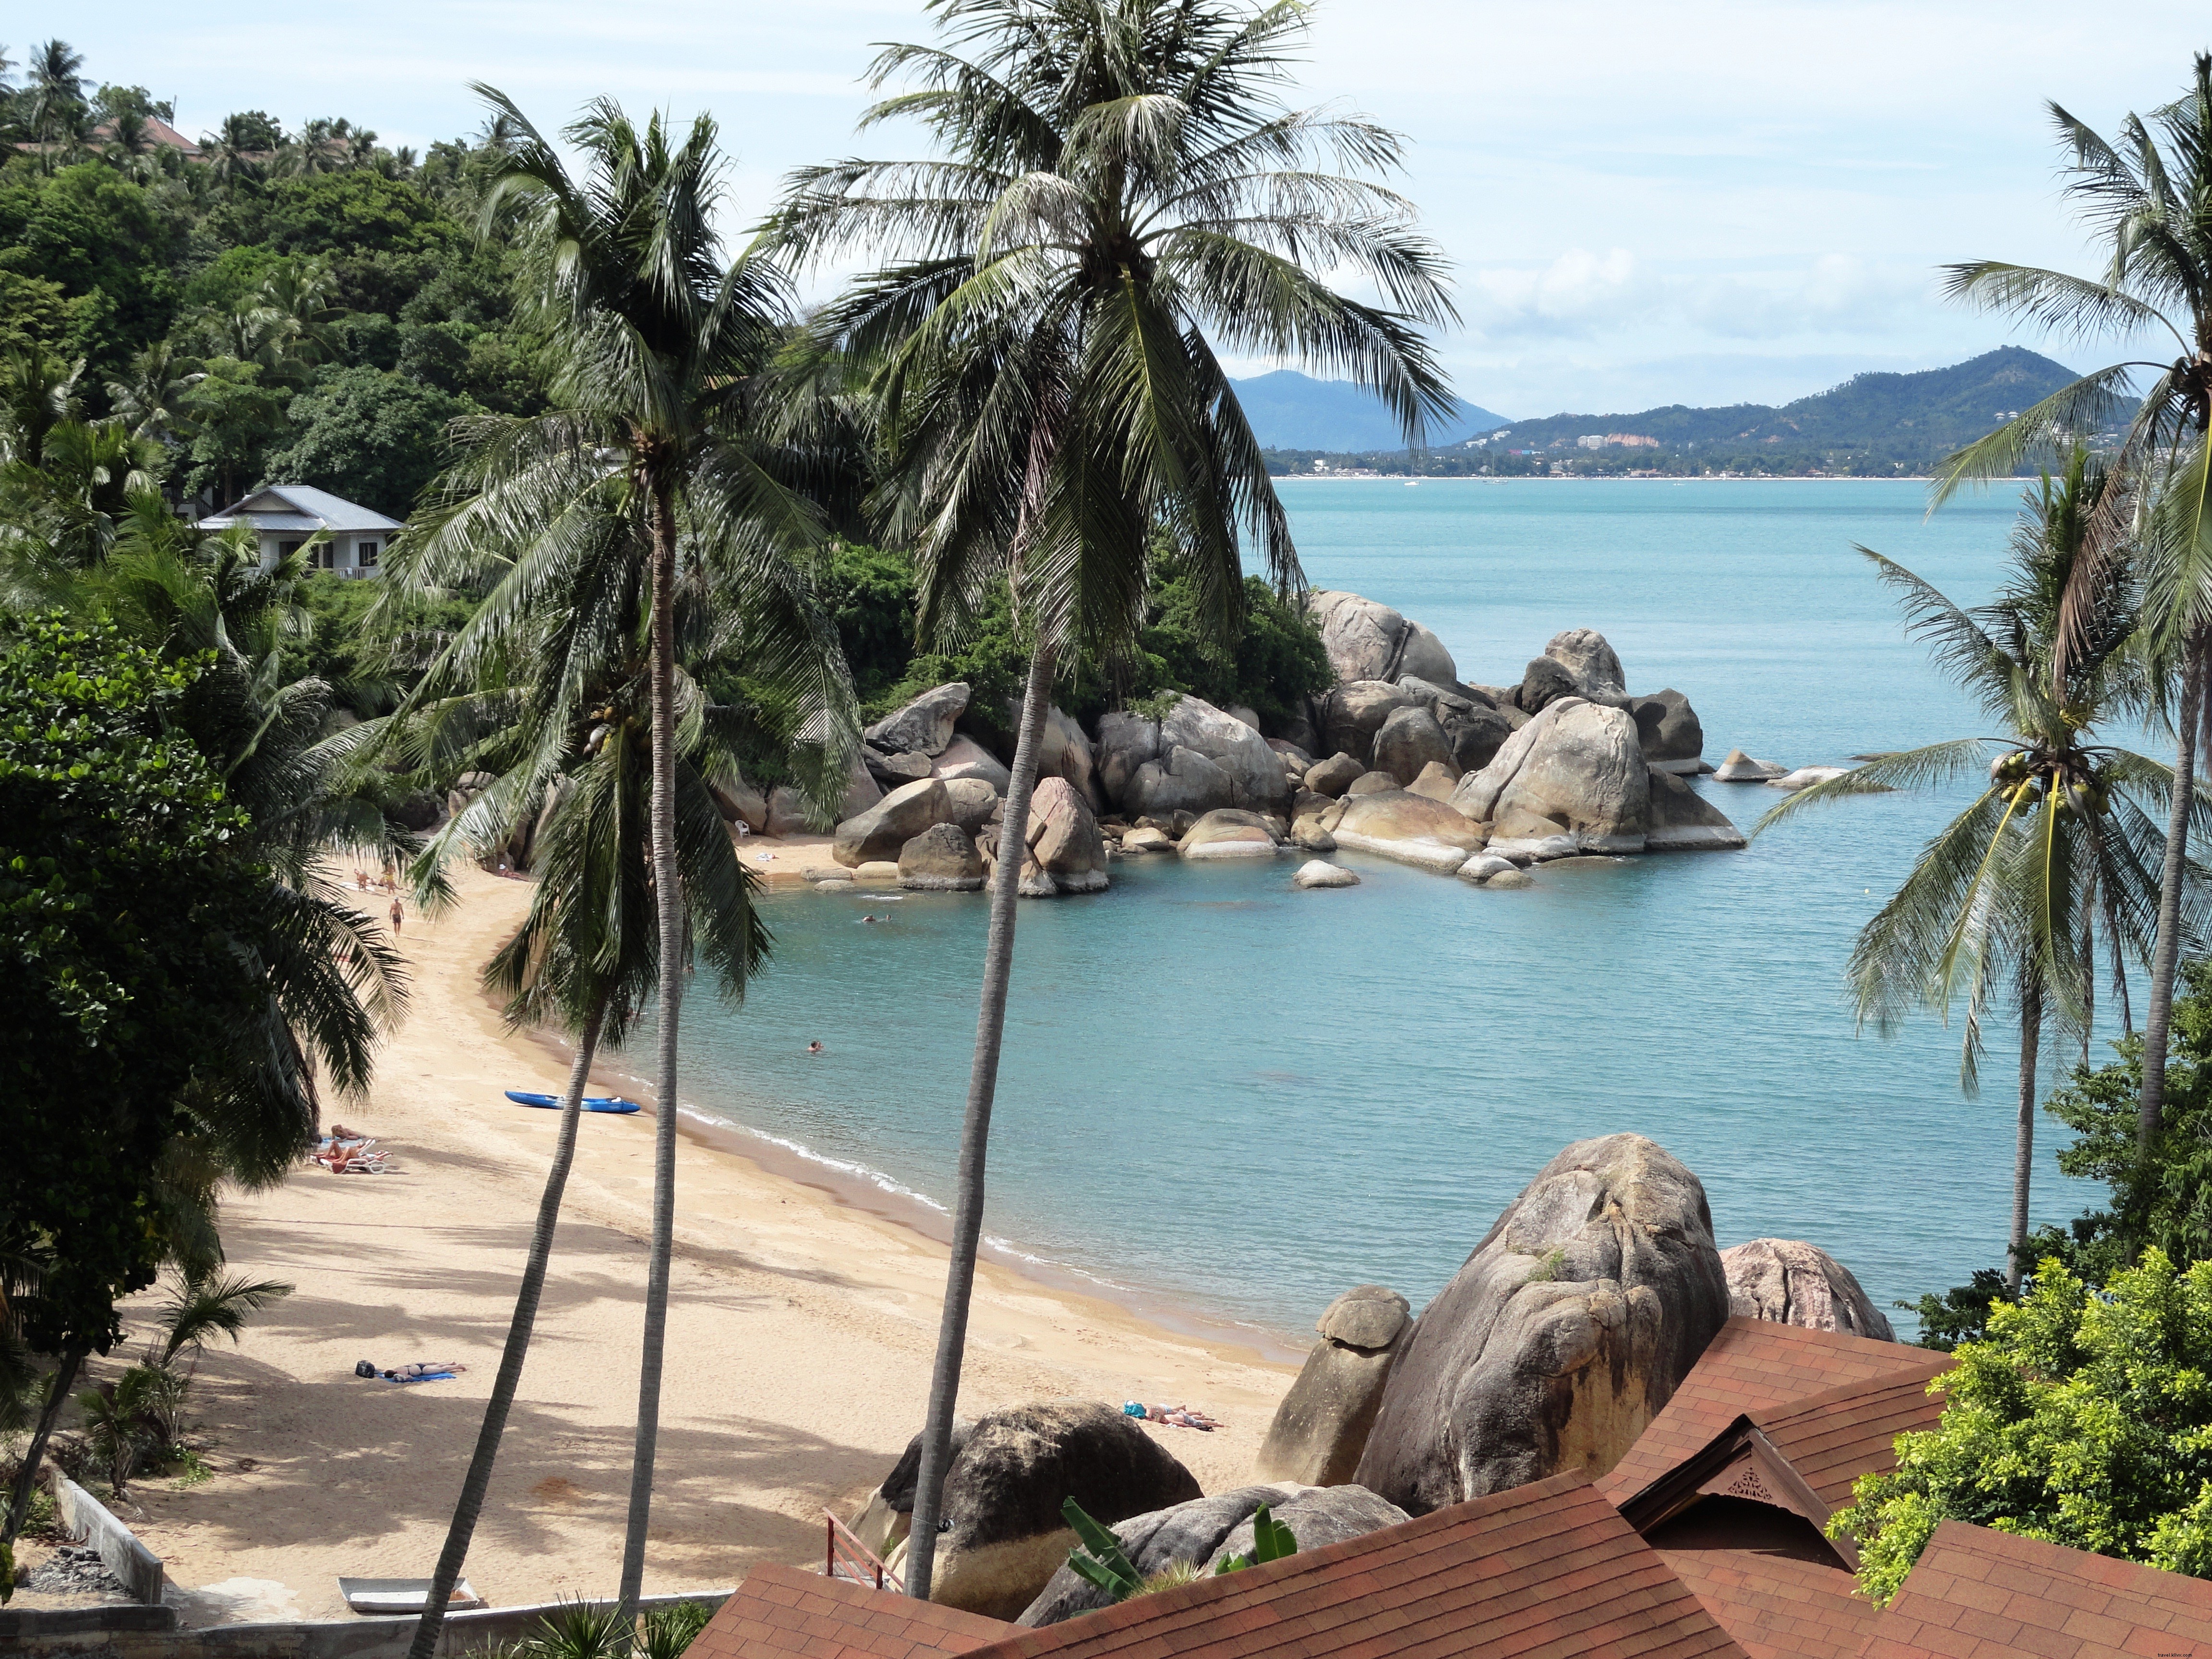 Koh Samui:a ilha tropical perfeita da Tailândia